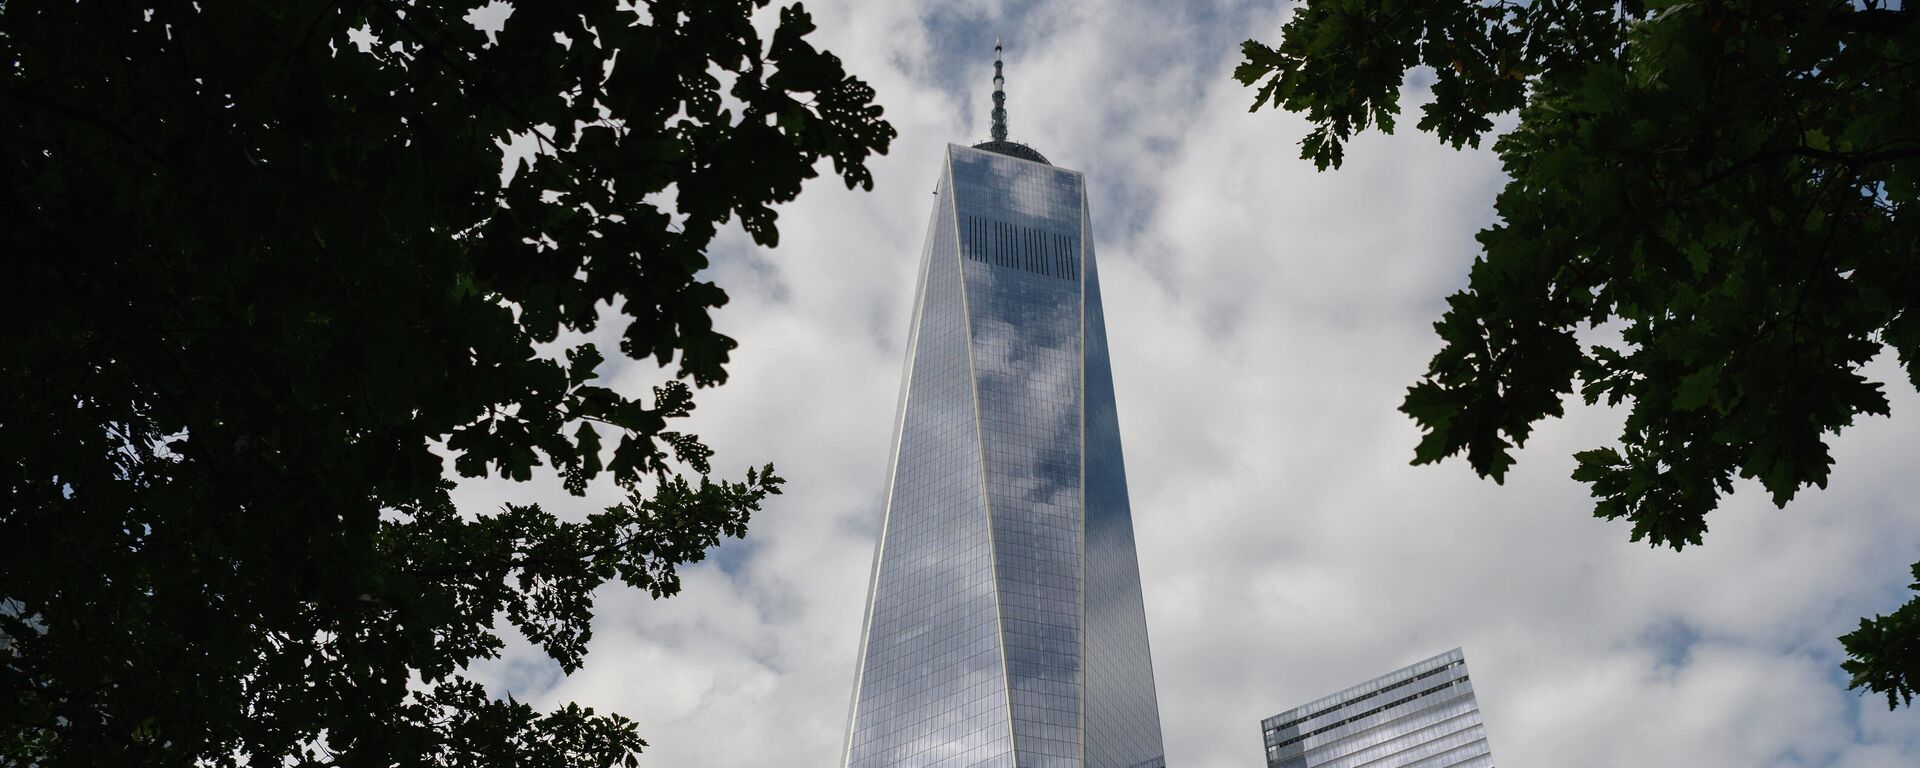 Freedom Tower in New York - Sputnik International, 1920, 10.09.2021